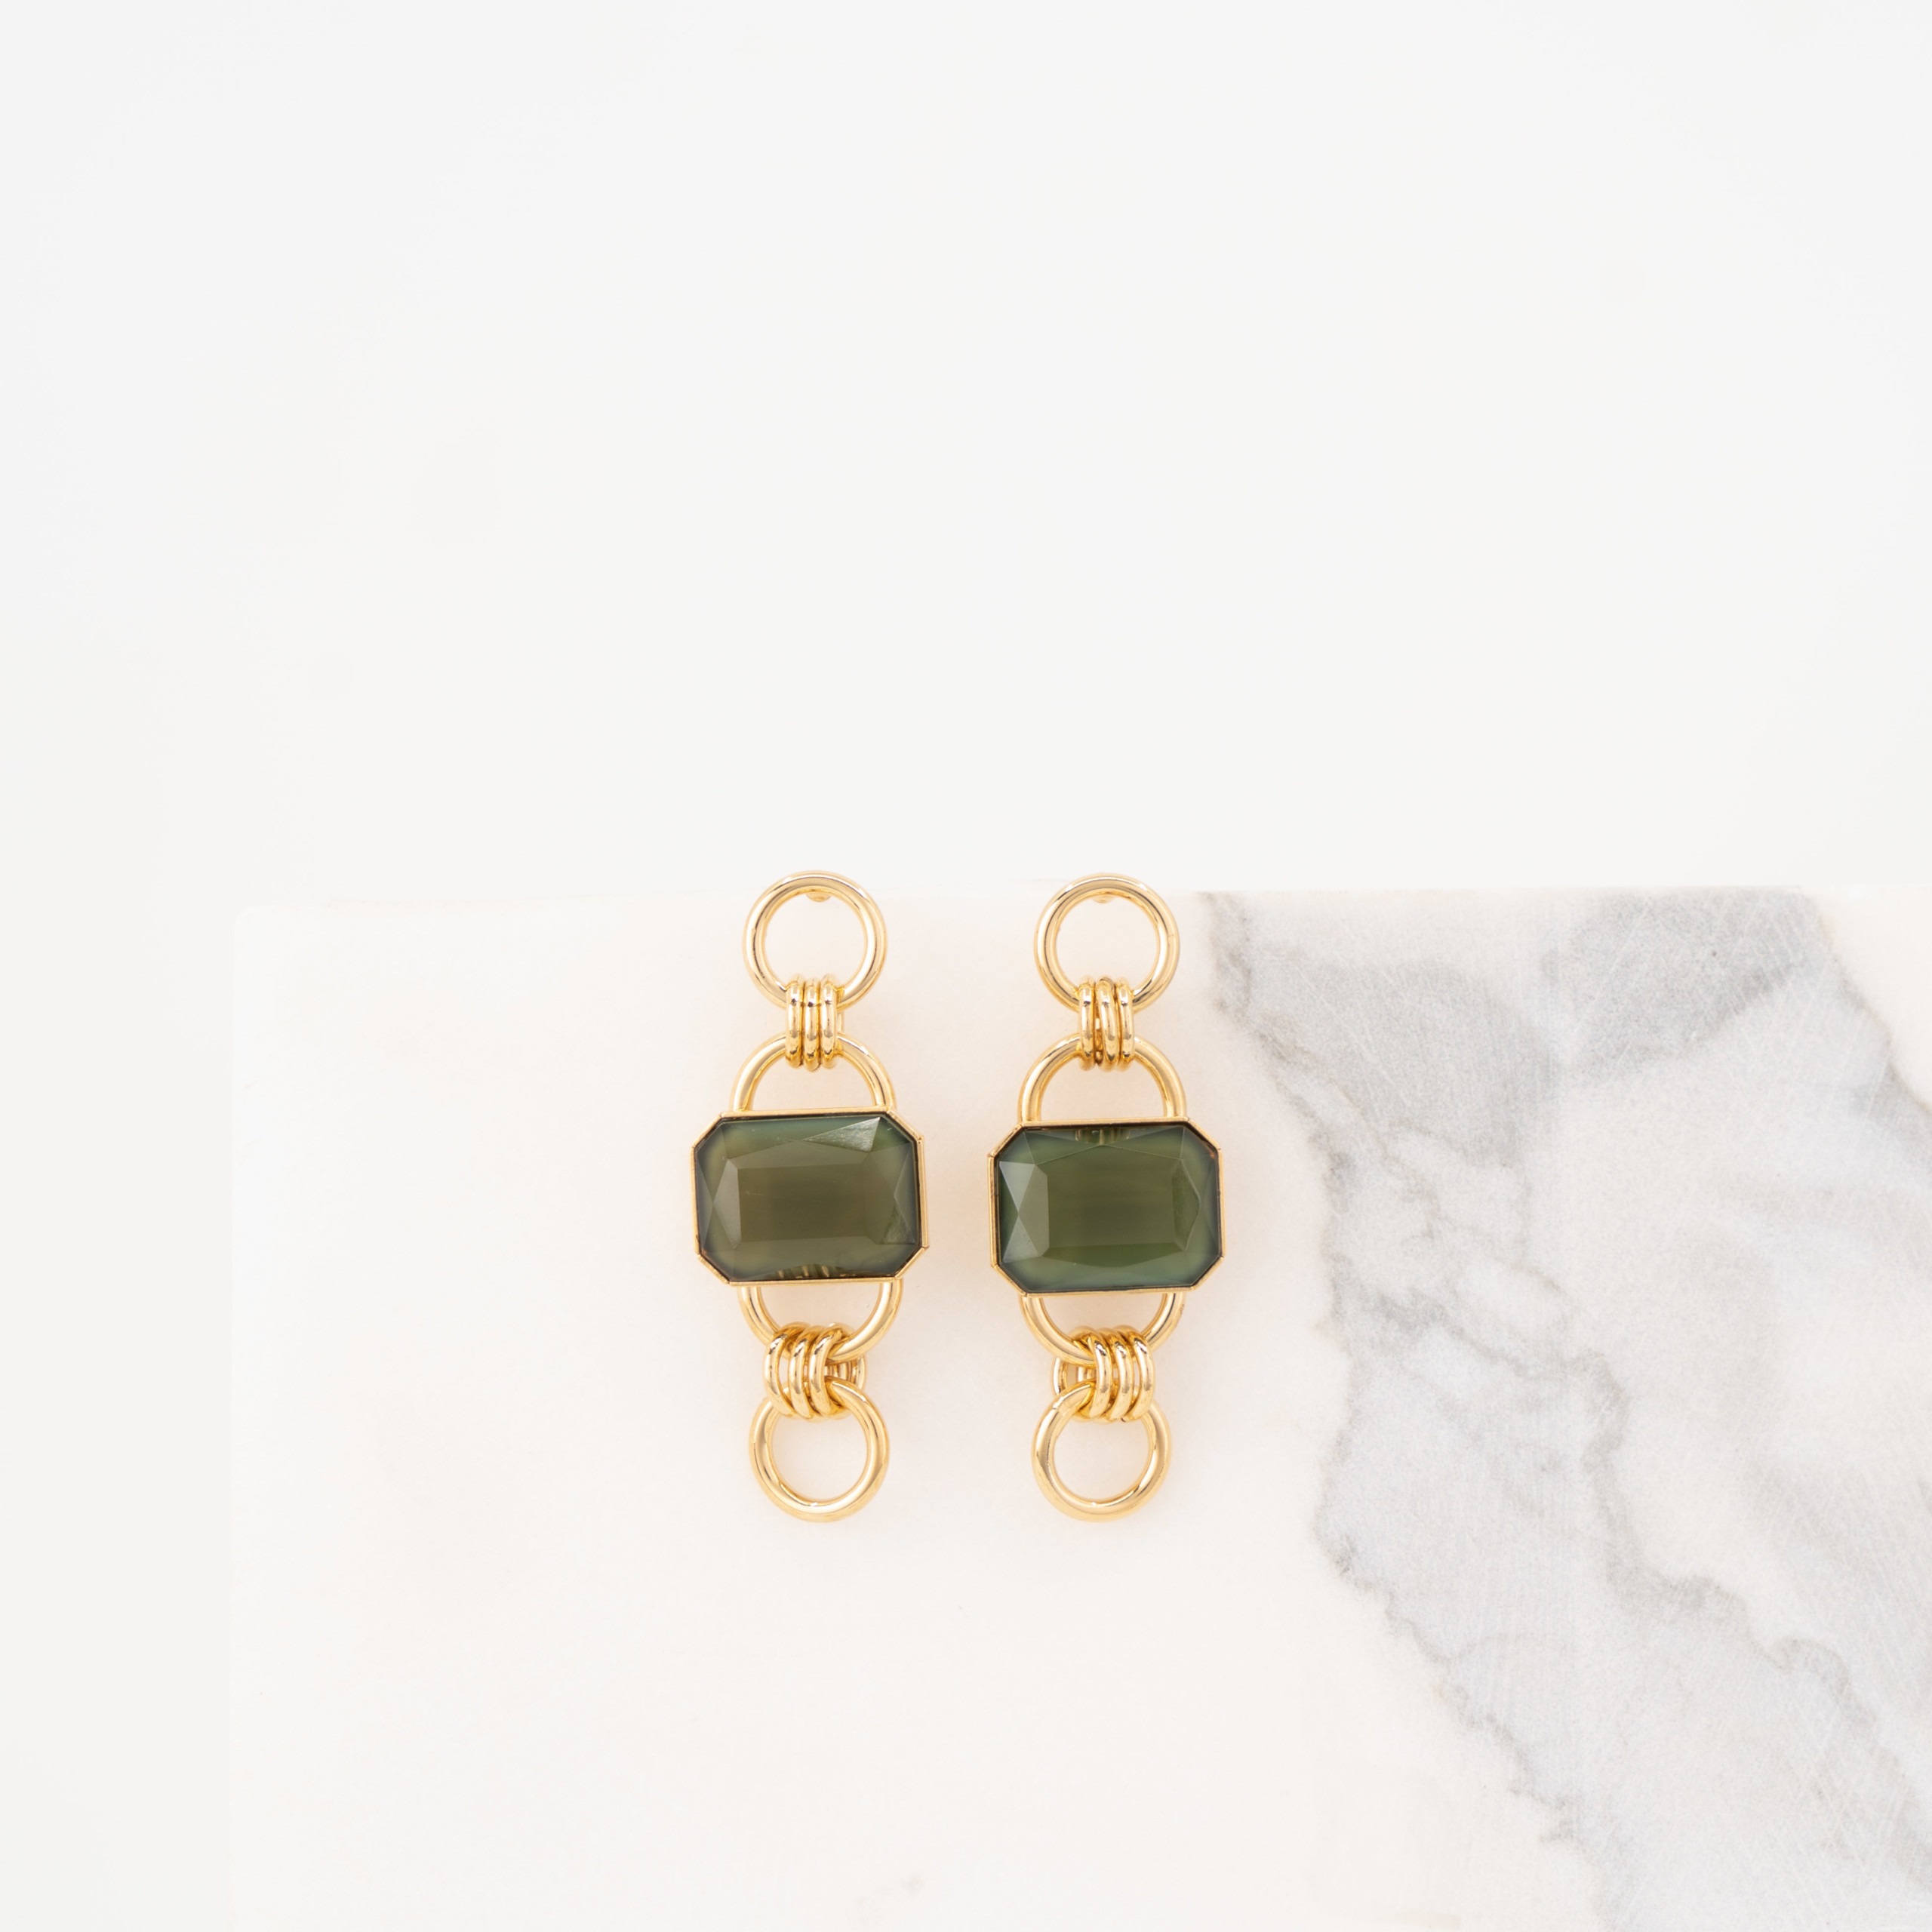 Tiffany green short earrings